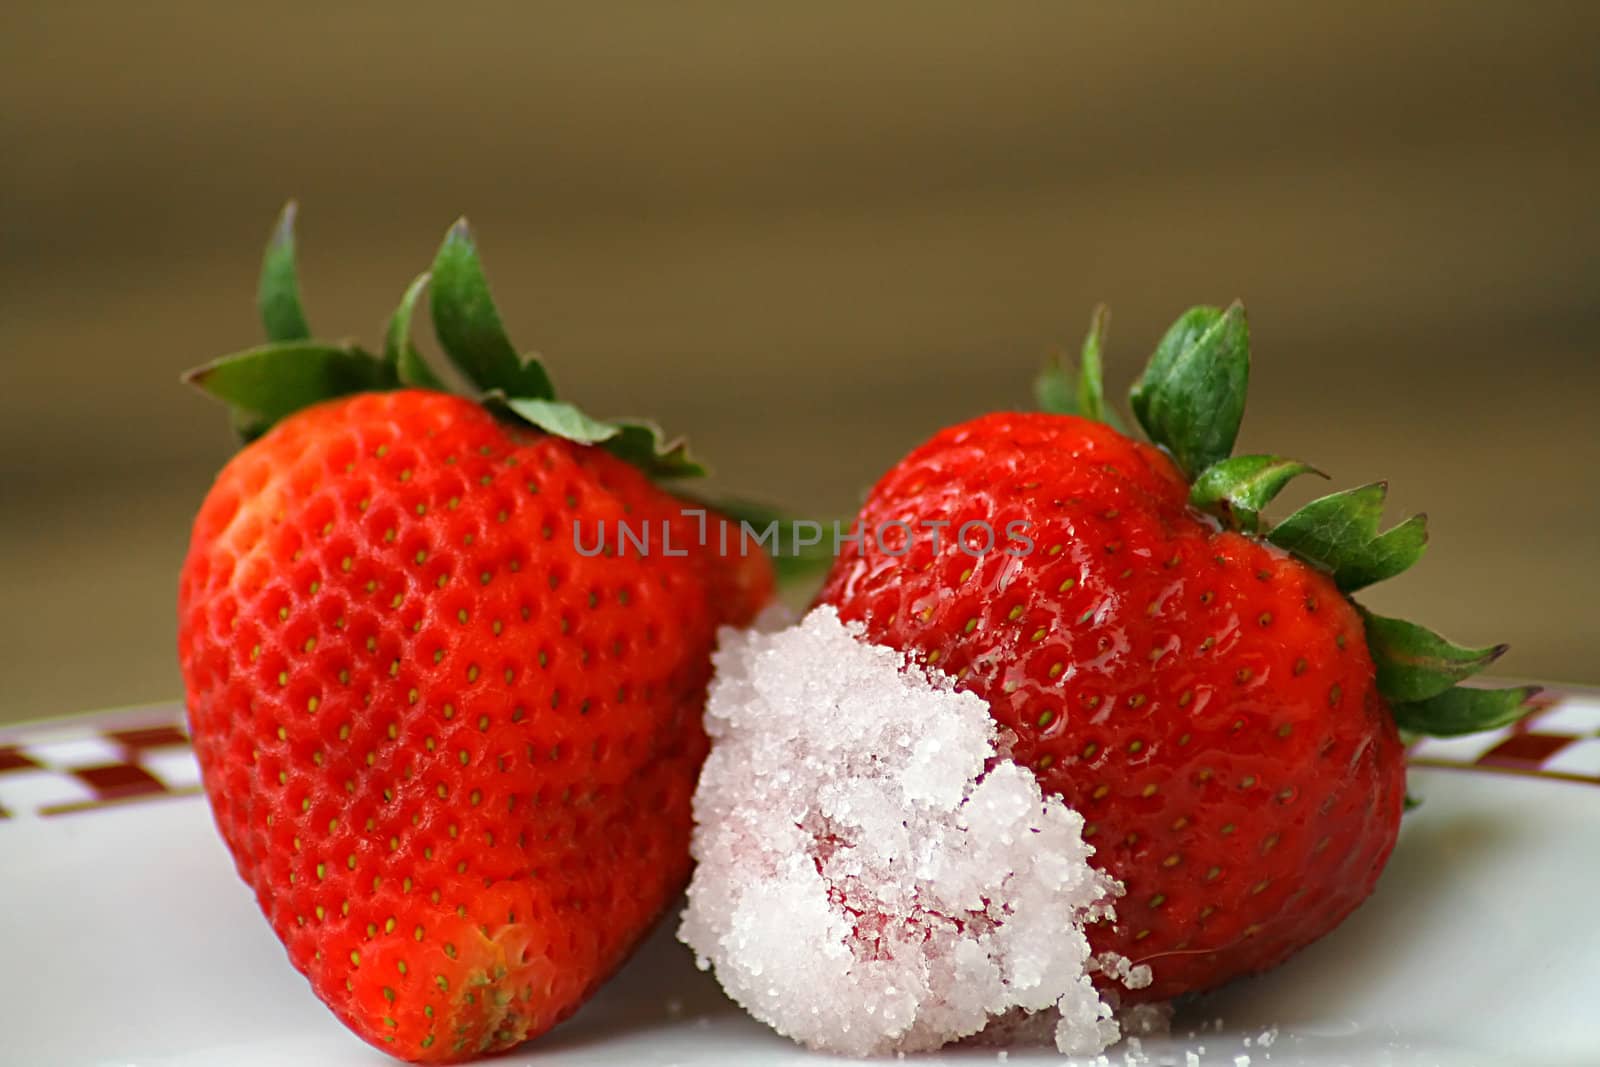 Strawberries dipped in sugar

